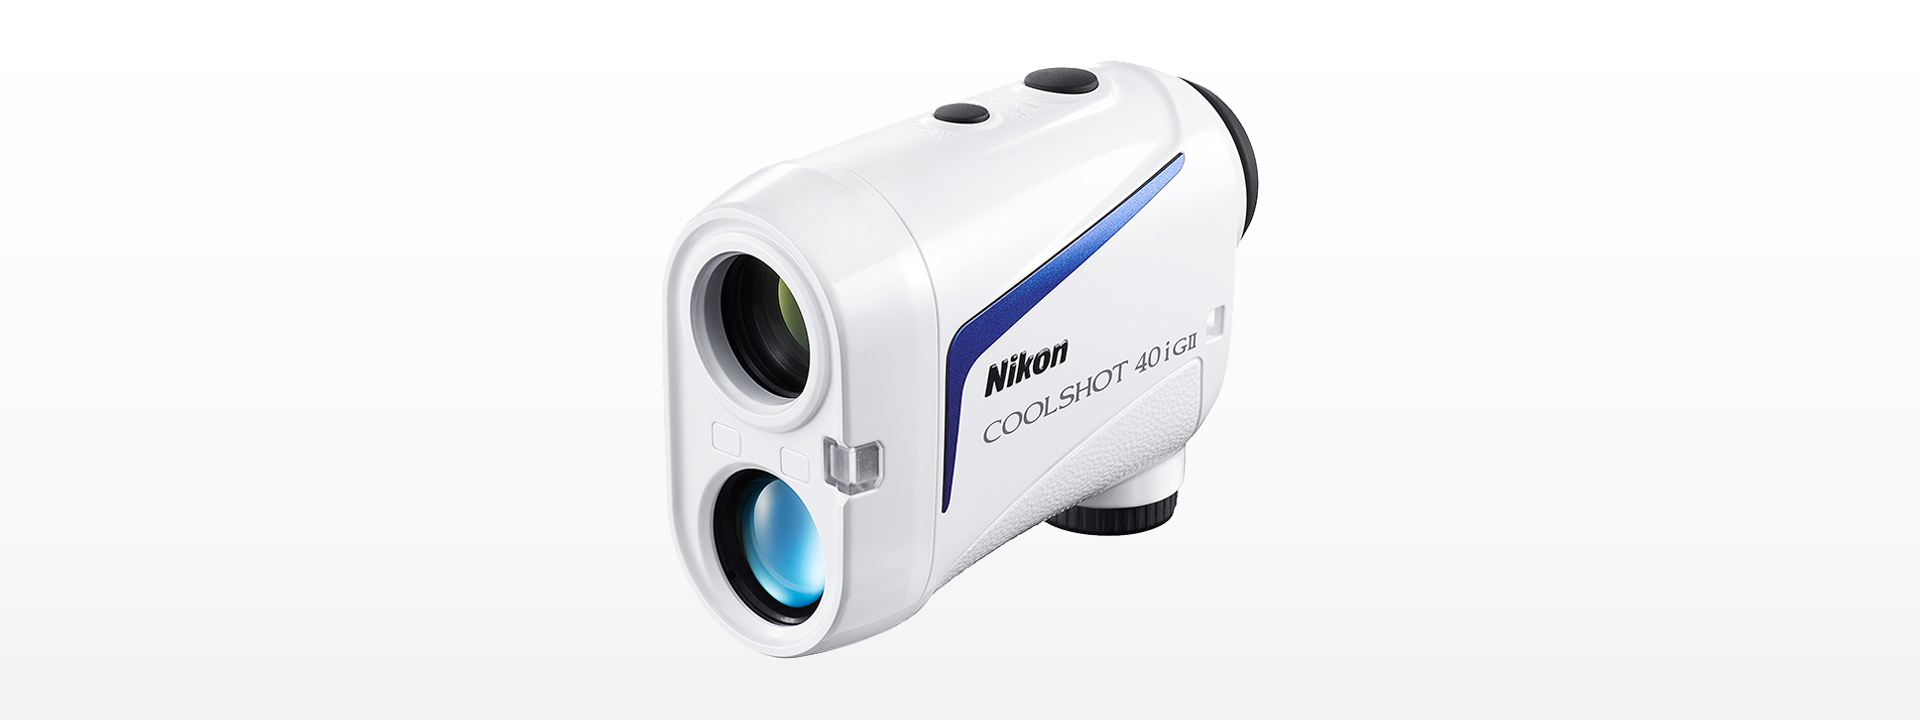 と2種類の測定機能を搭載Nikon ゴルフ用レーザー距離計 COOLSHOT 40i GII